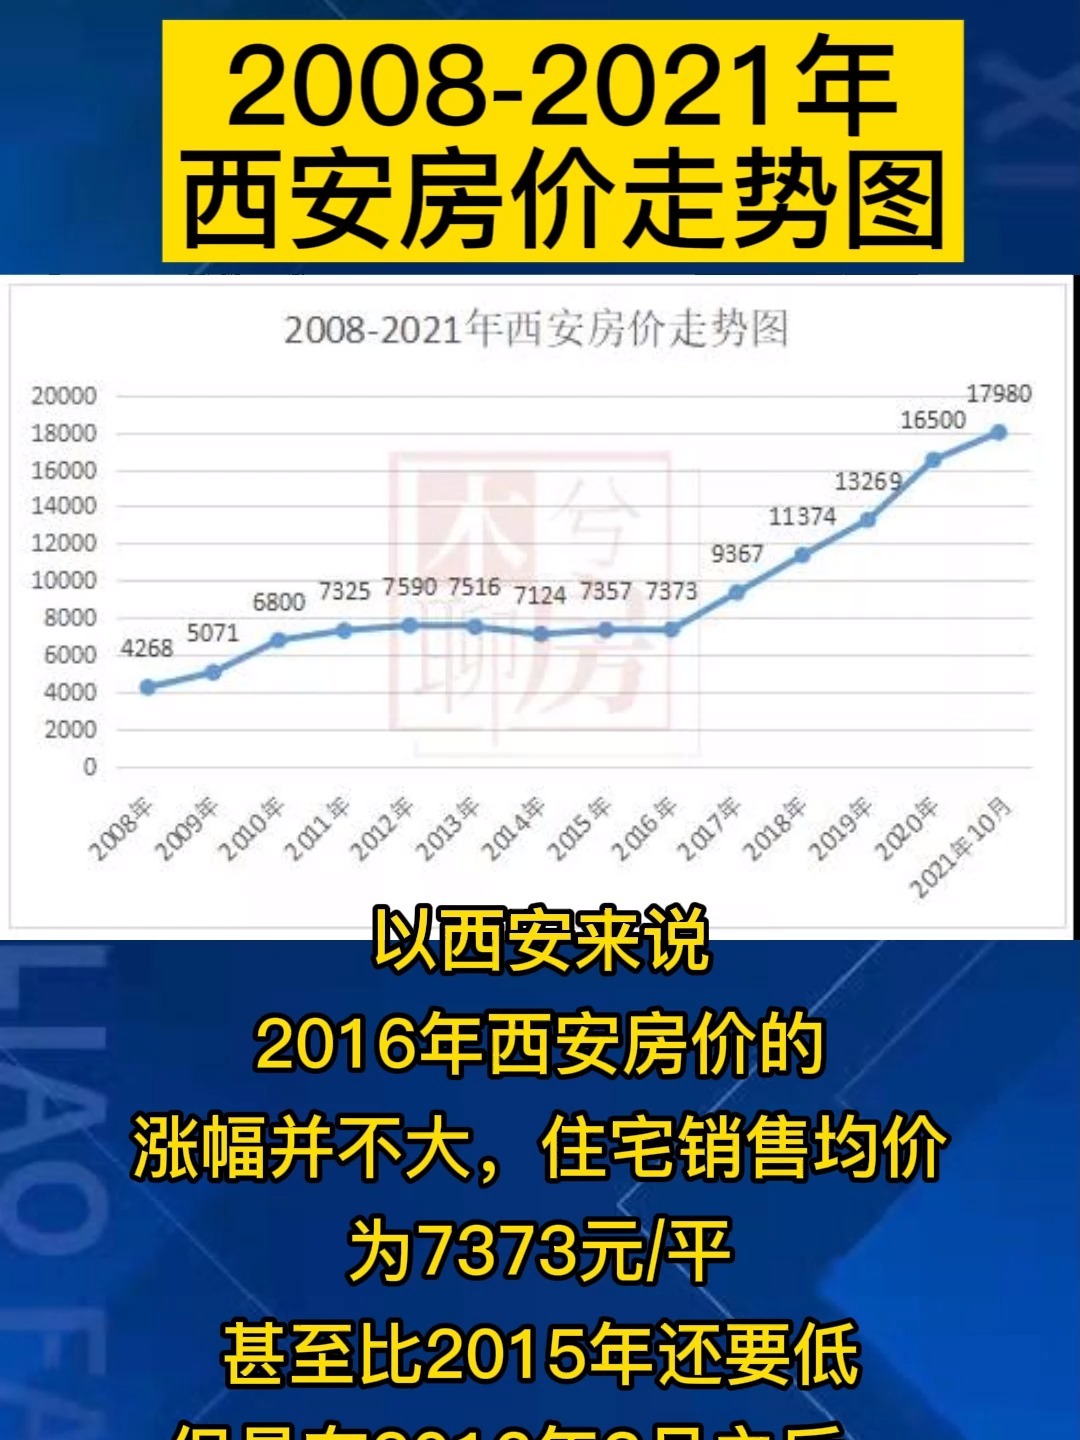 6月西安10行政区房价及涨跌情况 西安最新房价上涨到20197元/㎡_西安房价_聚汇数据